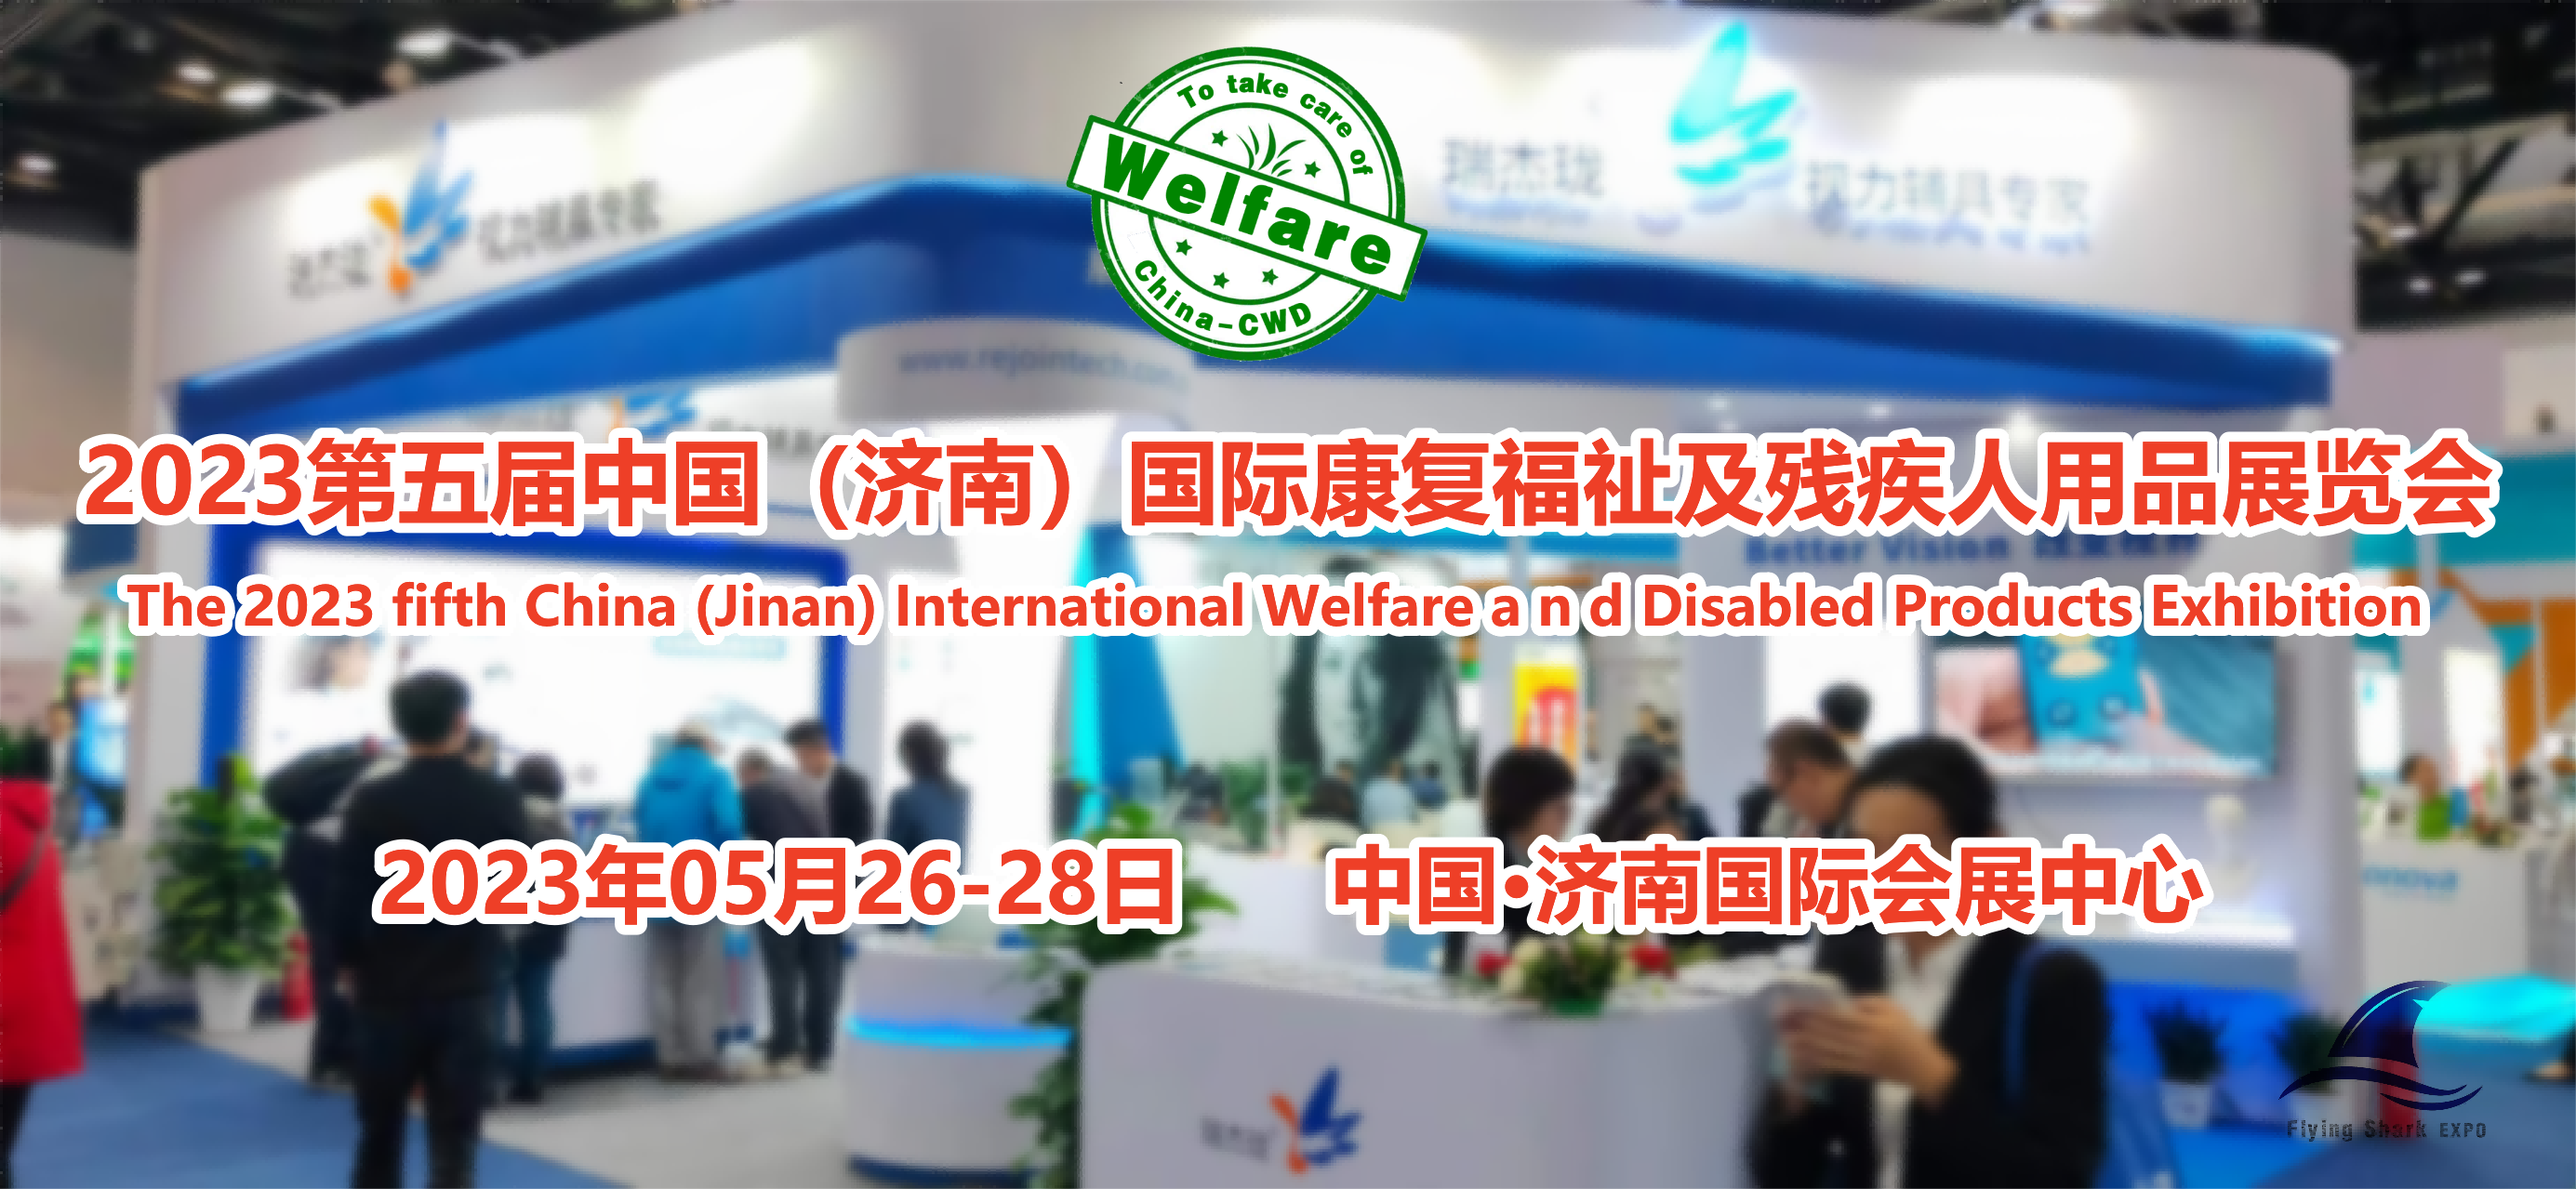 2023第五届中国山东国际康复福祉与残疾人用品展览会图1